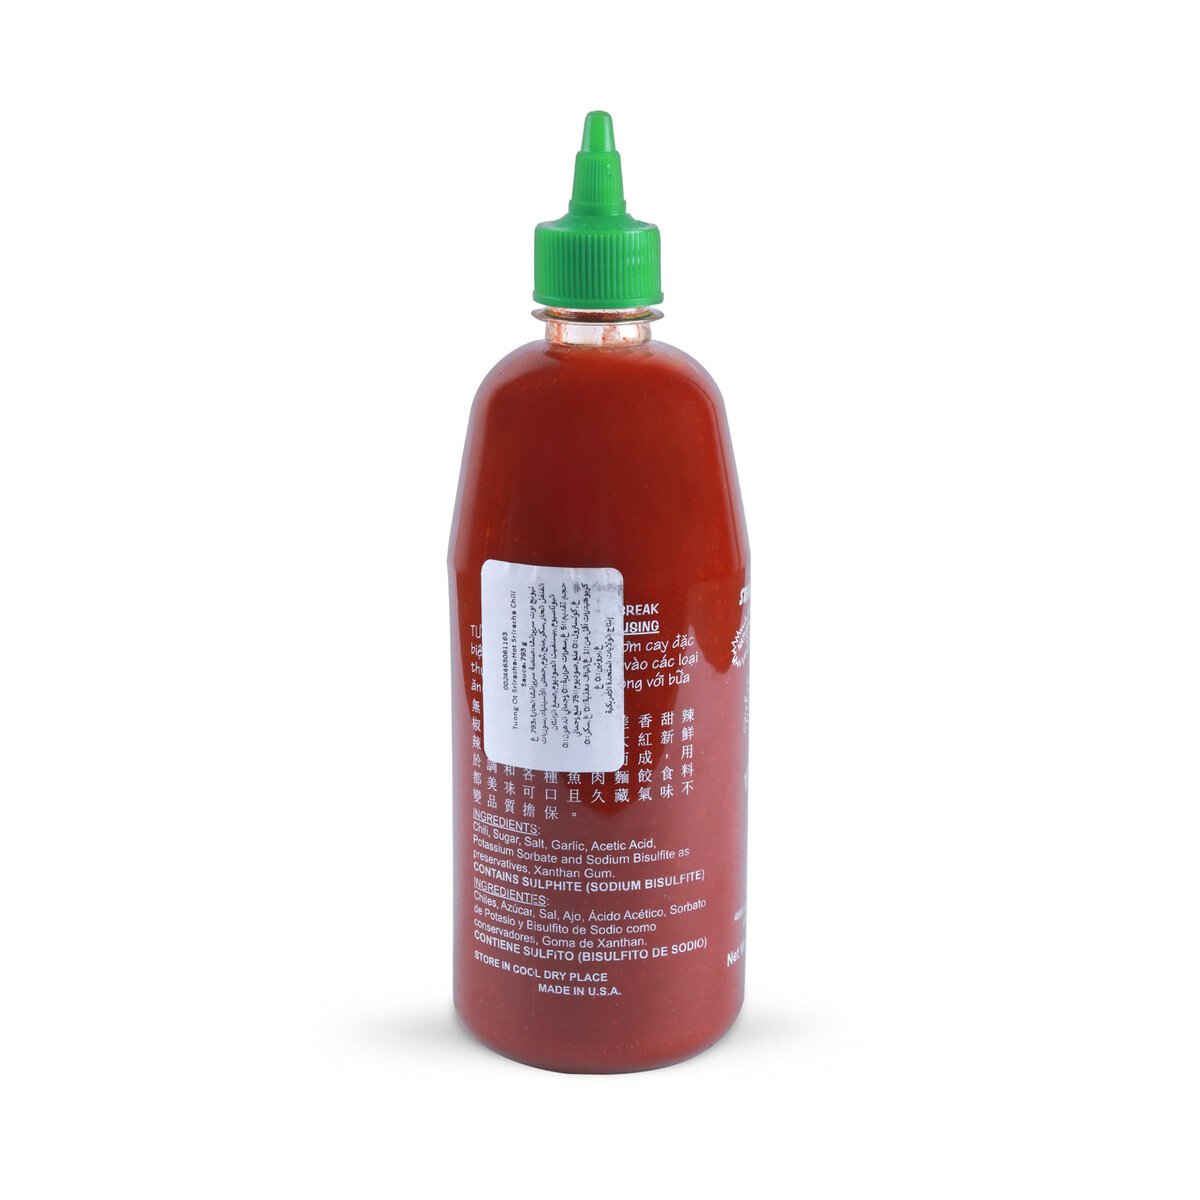 Sriracha Hot Chili Sauce 793g